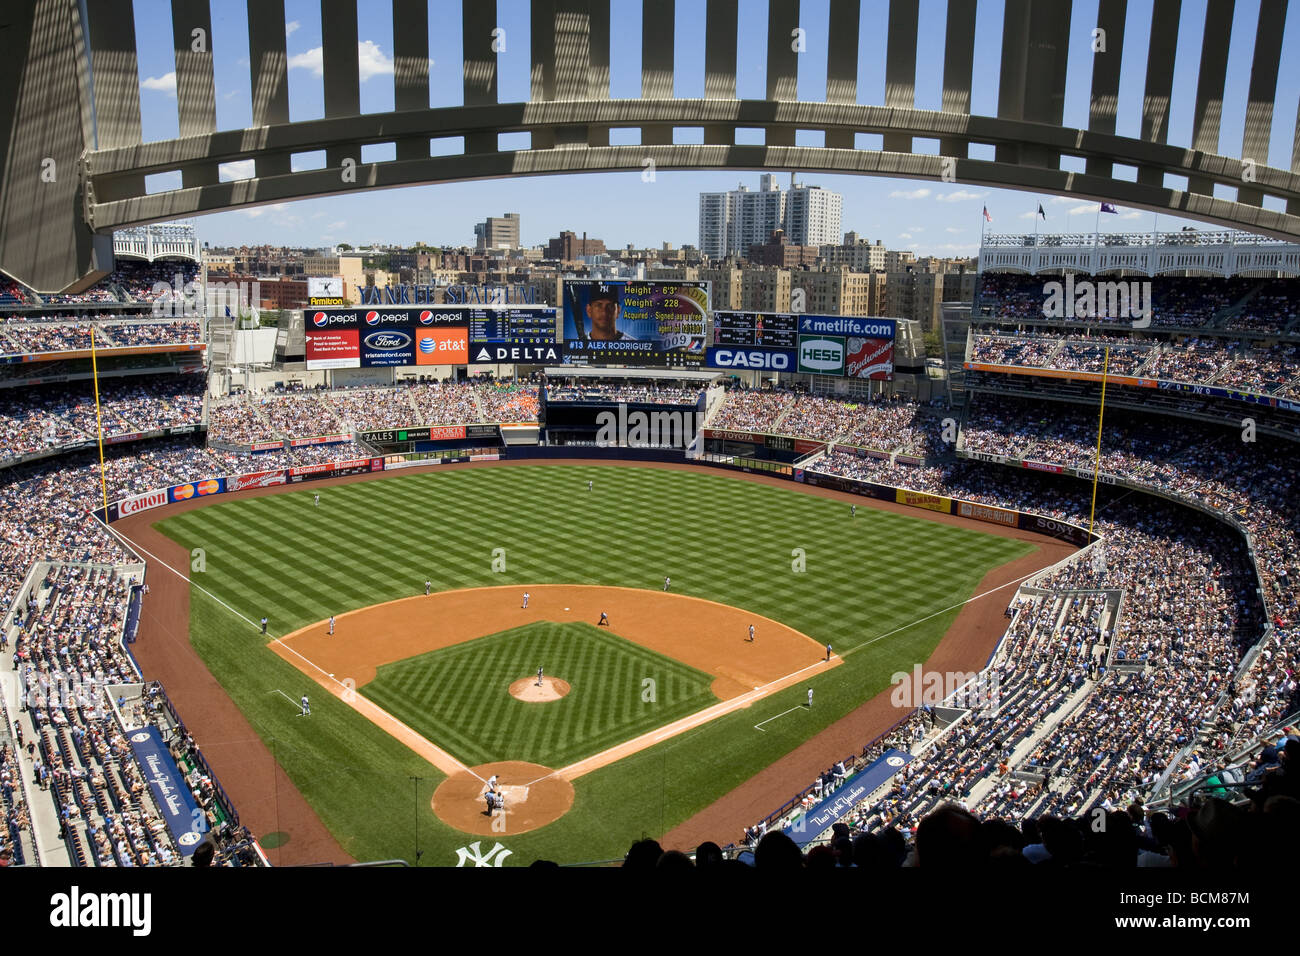 Aerial view of Yankee Stadium in Bronx, New York Stock Photo - Alamy